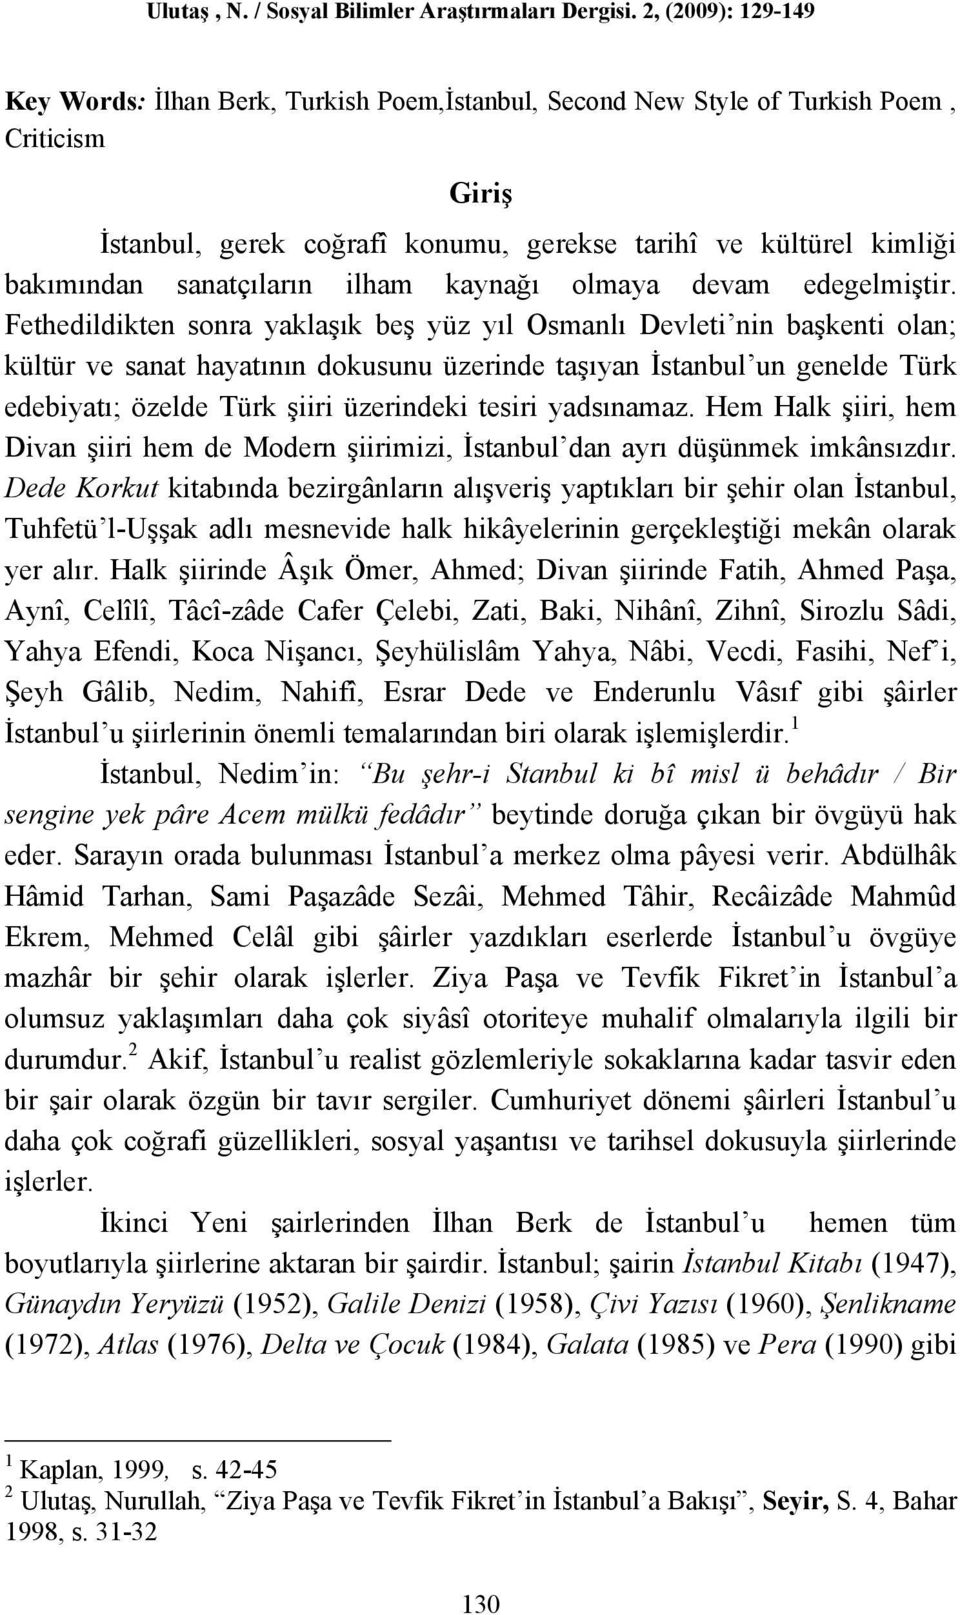 Fethedildikten sonra yaklaşık beş yüz yıl Osmanlı Devleti nin başkenti olan; kültür ve sanat hayatının dokusunu üzerinde taşıyan İstanbul un genelde Türk edebiyatı; özelde Türk şiiri üzerindeki